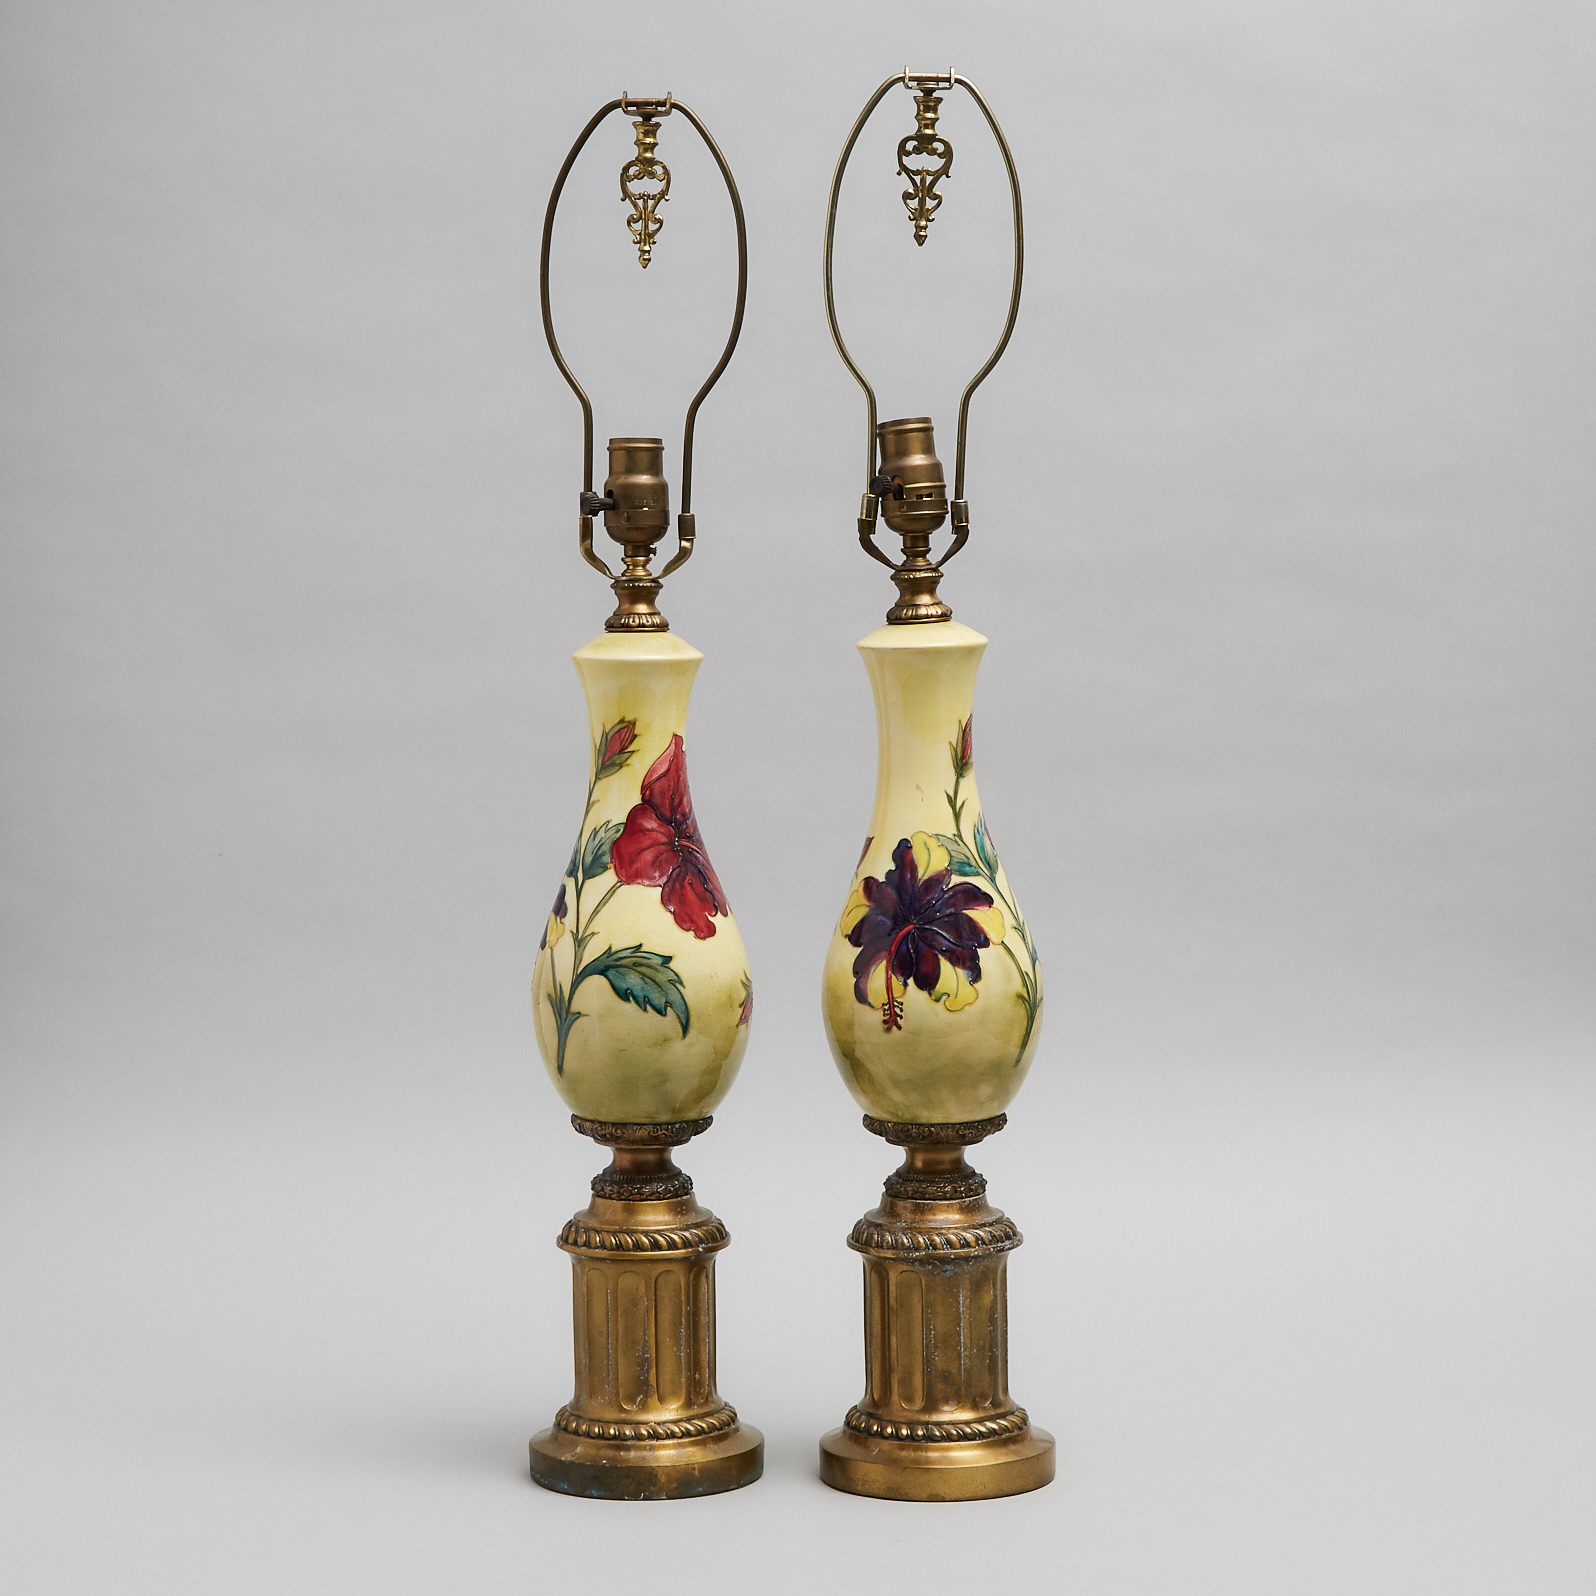 Pair of Moorcroft Hibiscus Lamps, 20th century